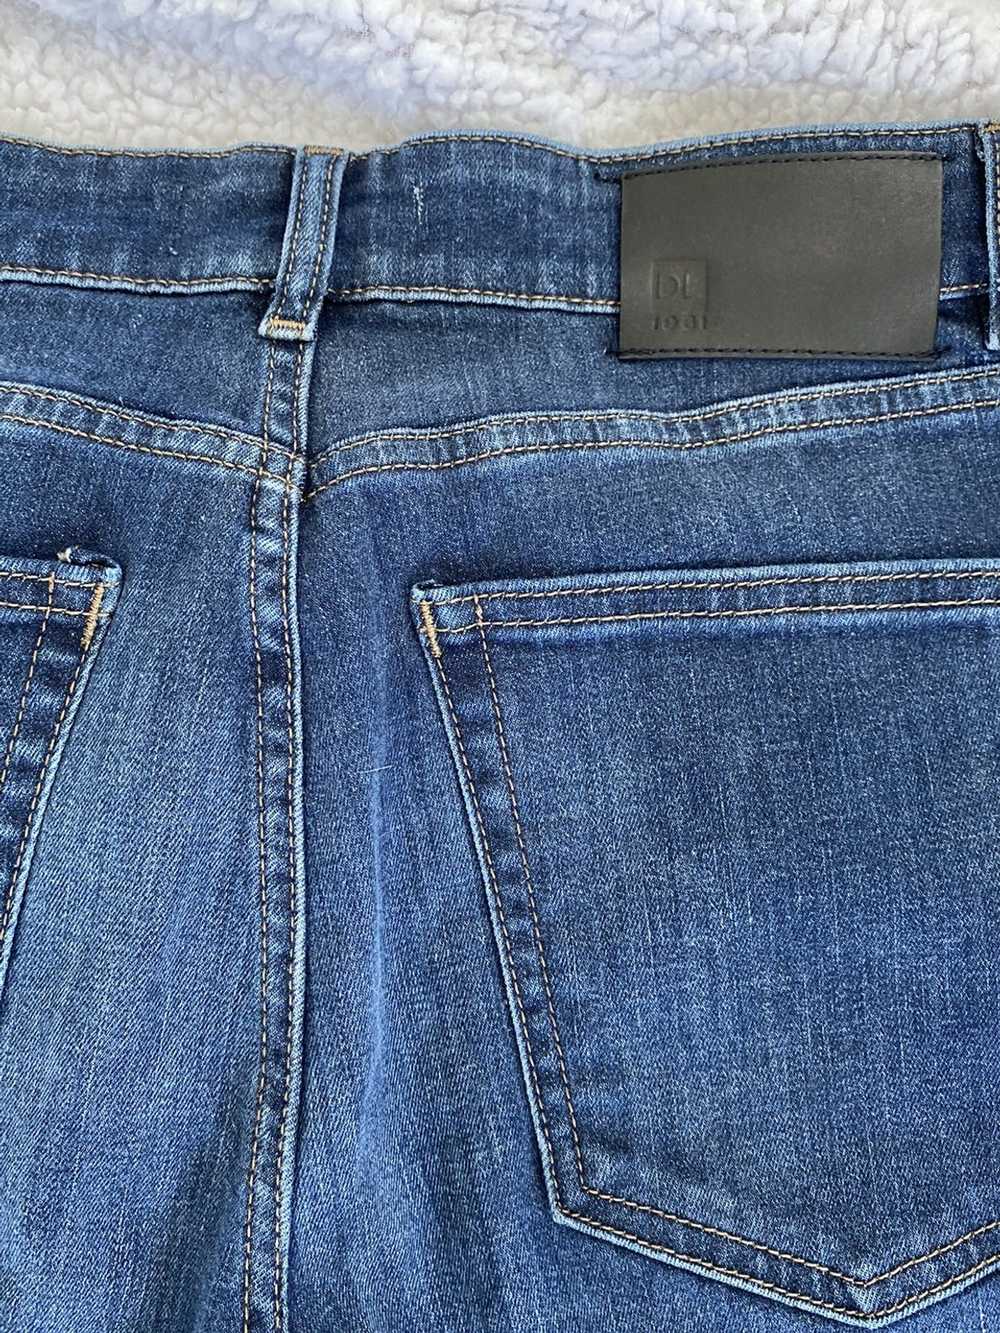 Dl1961 DL1961 “Hunter Skinny” Blue Jeans. 32 Wais… - image 2